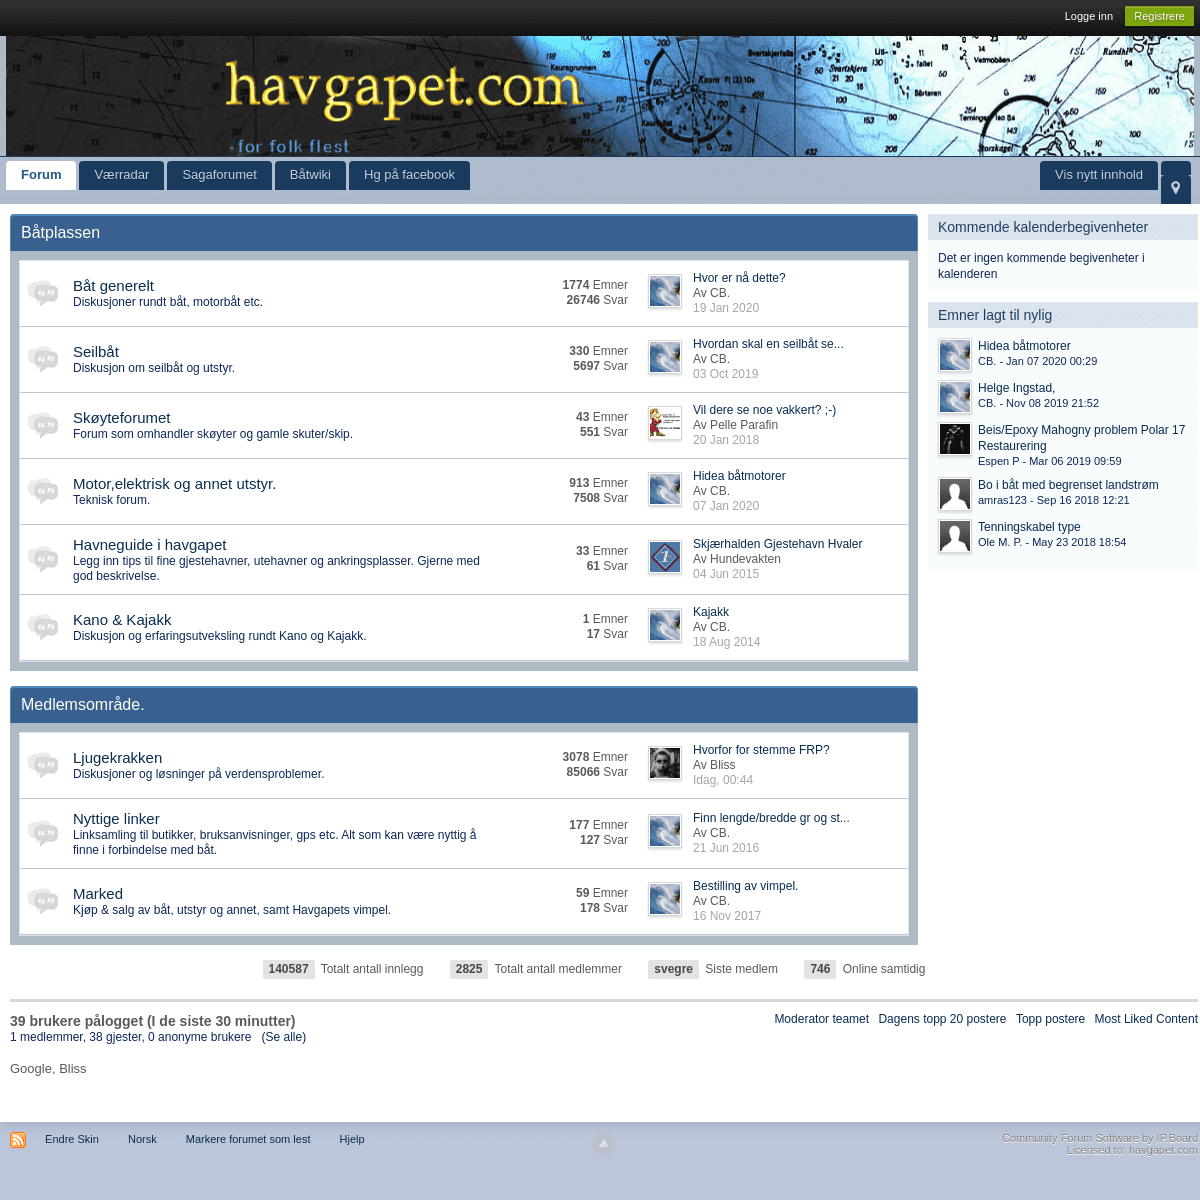 A complete backup of havgapet.com